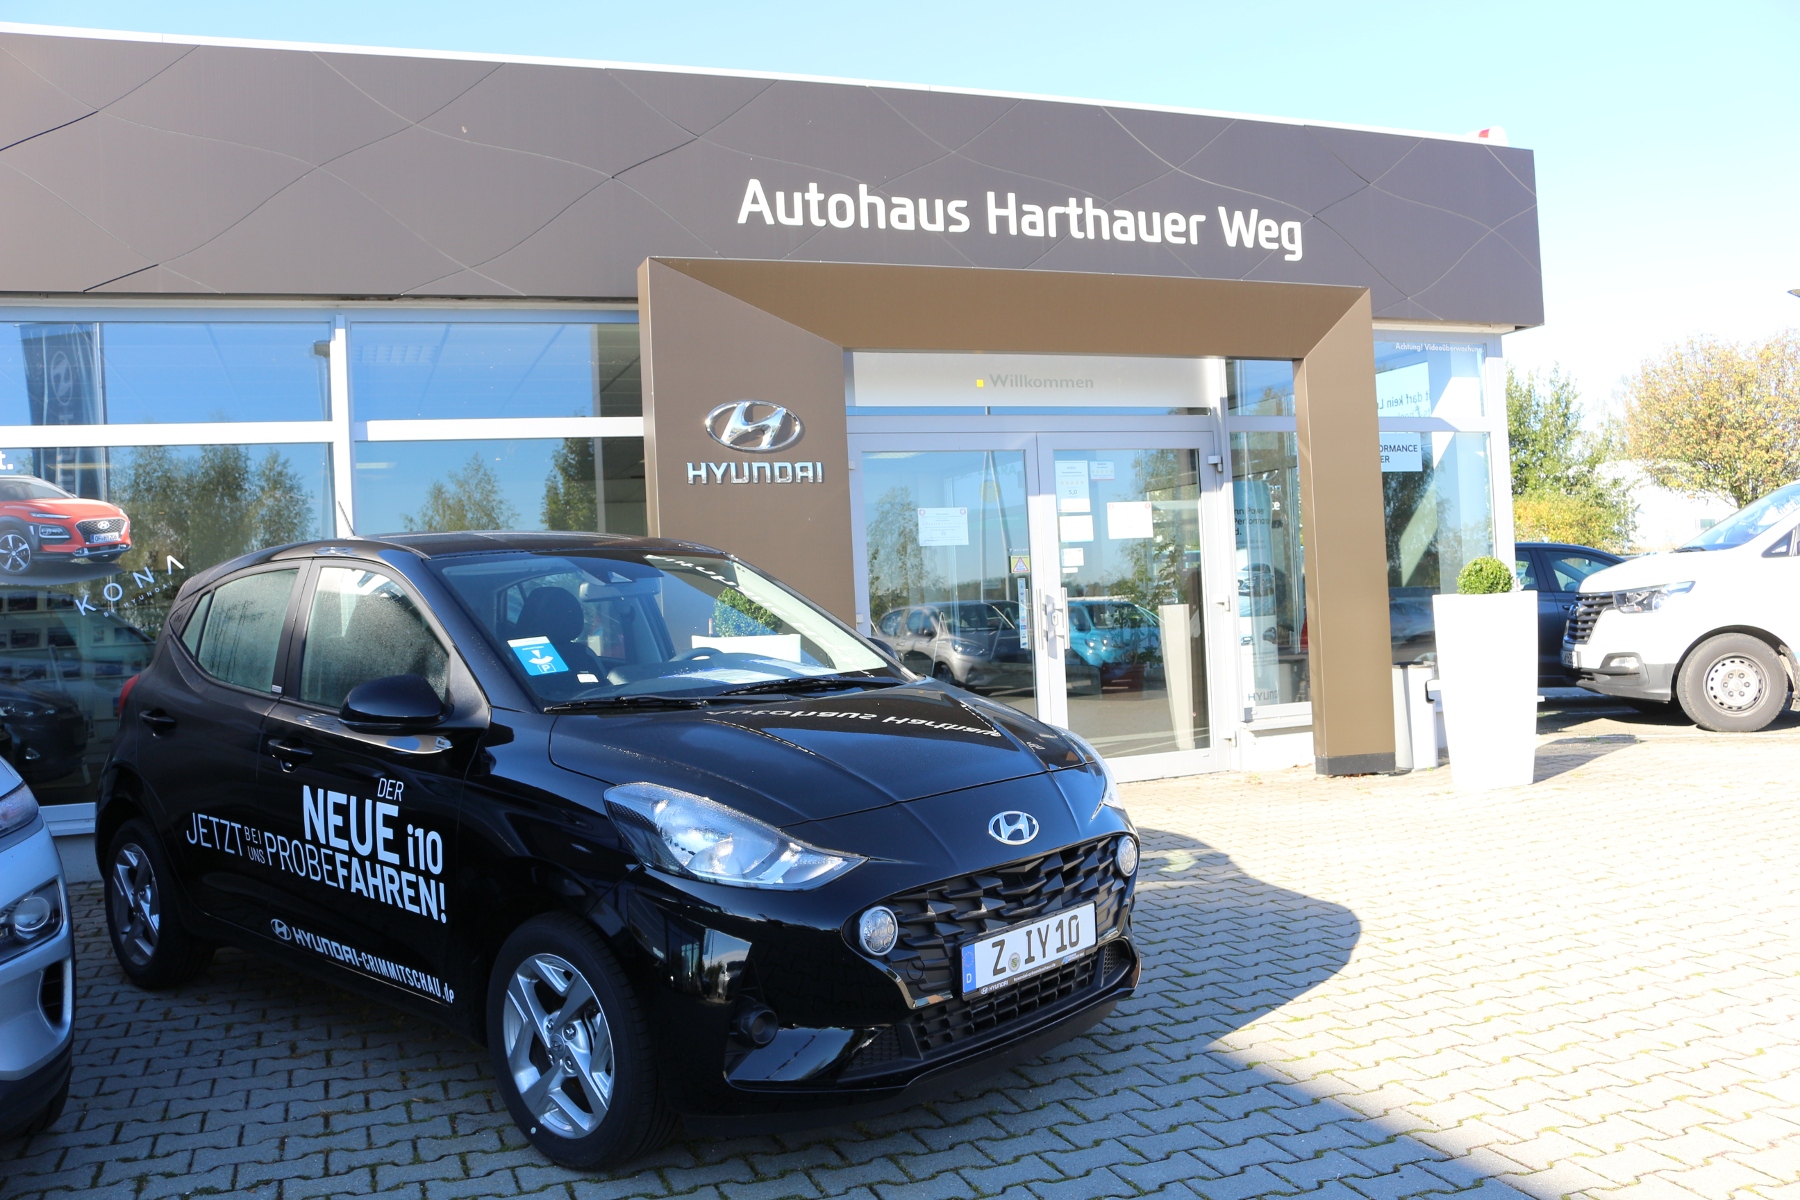 Licht-test im Hyundai Autohaus Harthauer Weg Crimmitschau